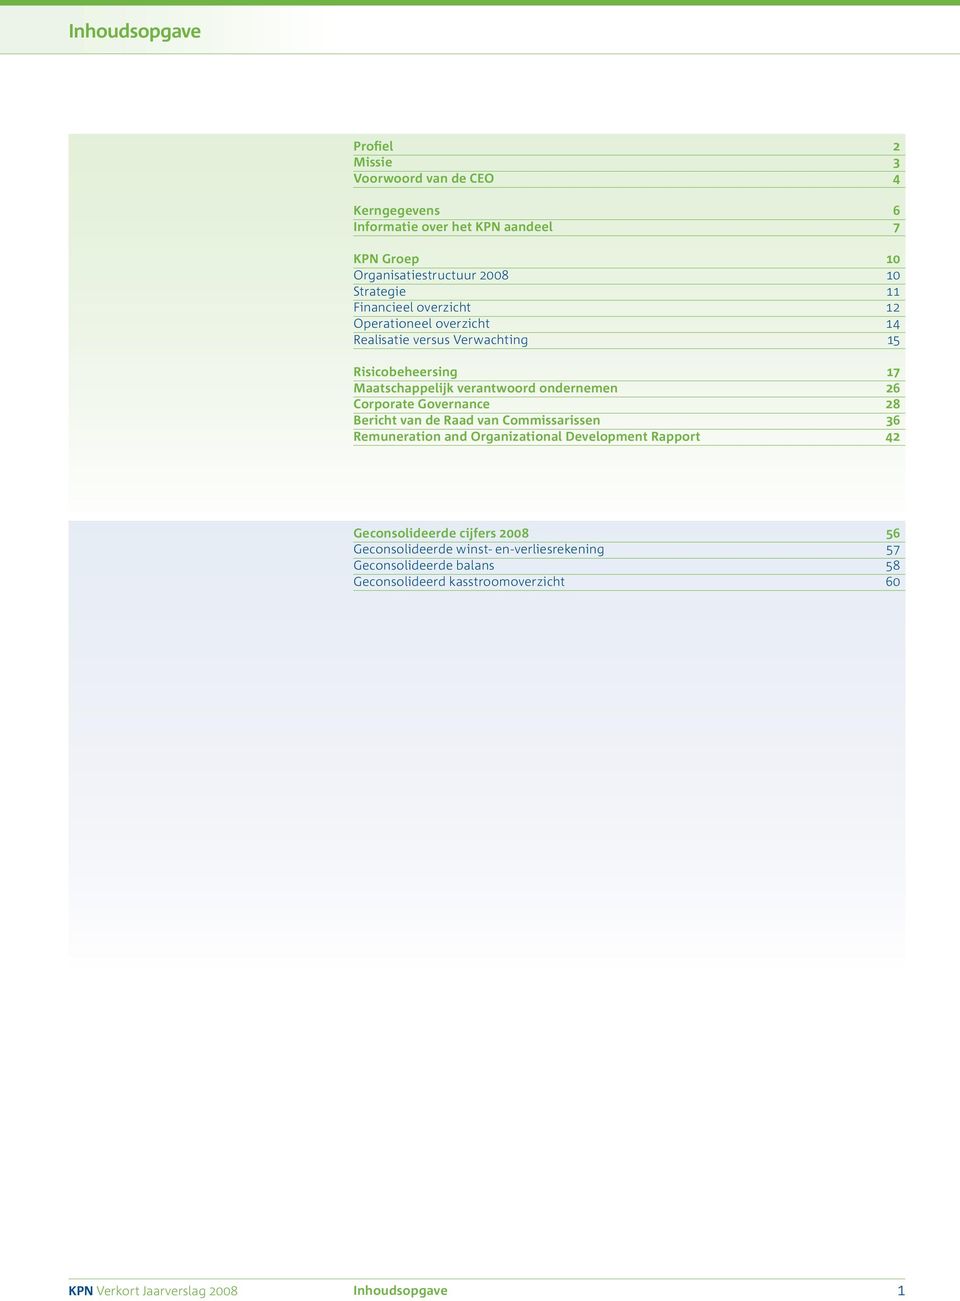 ondernemen 26 Corporate Governance 28 Bericht van de Raad van Commissarissen 36 Remuneration and Organizational Development Rapport 42 Geconsolideerde